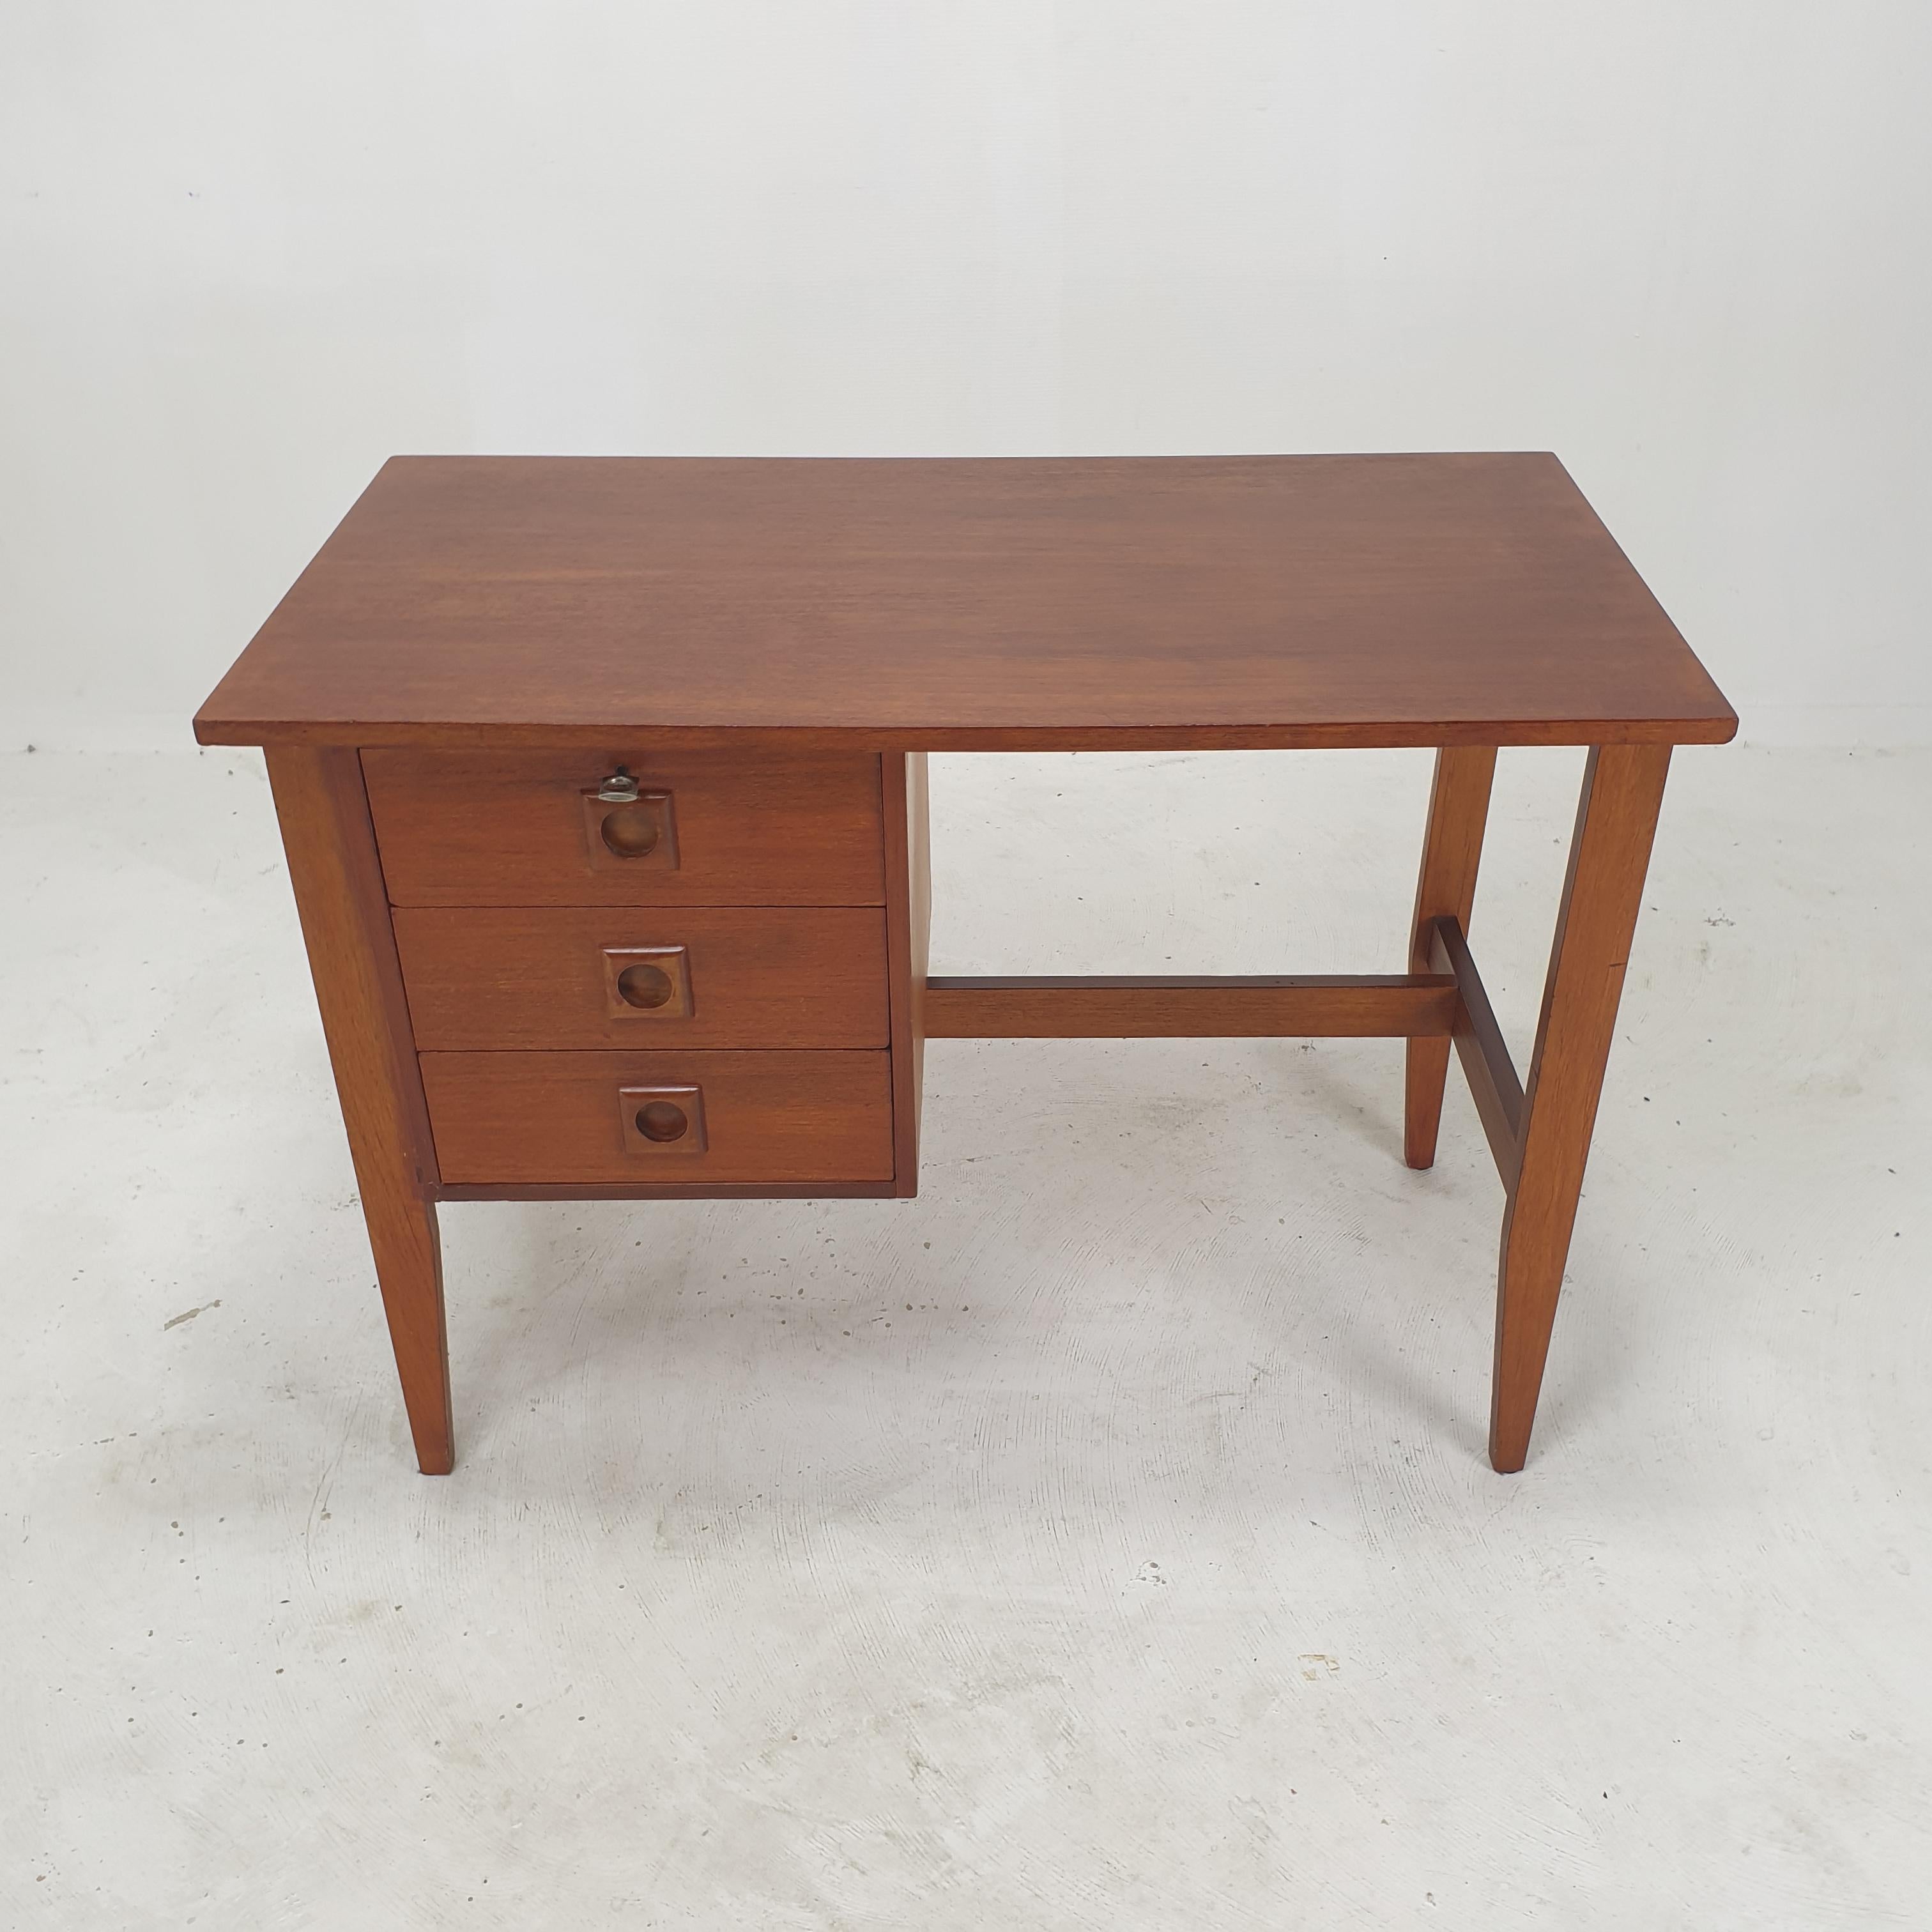 Sehr schöner Schreibtisch aus Teakholz, hergestellt in Dänemark in den 1970er Jahren. 

Der Schreibtisch kann dank der bearbeiteten Rückseite auch freistehend verwendet werden.

Auf der Vorderseite befinden sich drei Schubladen mit dem